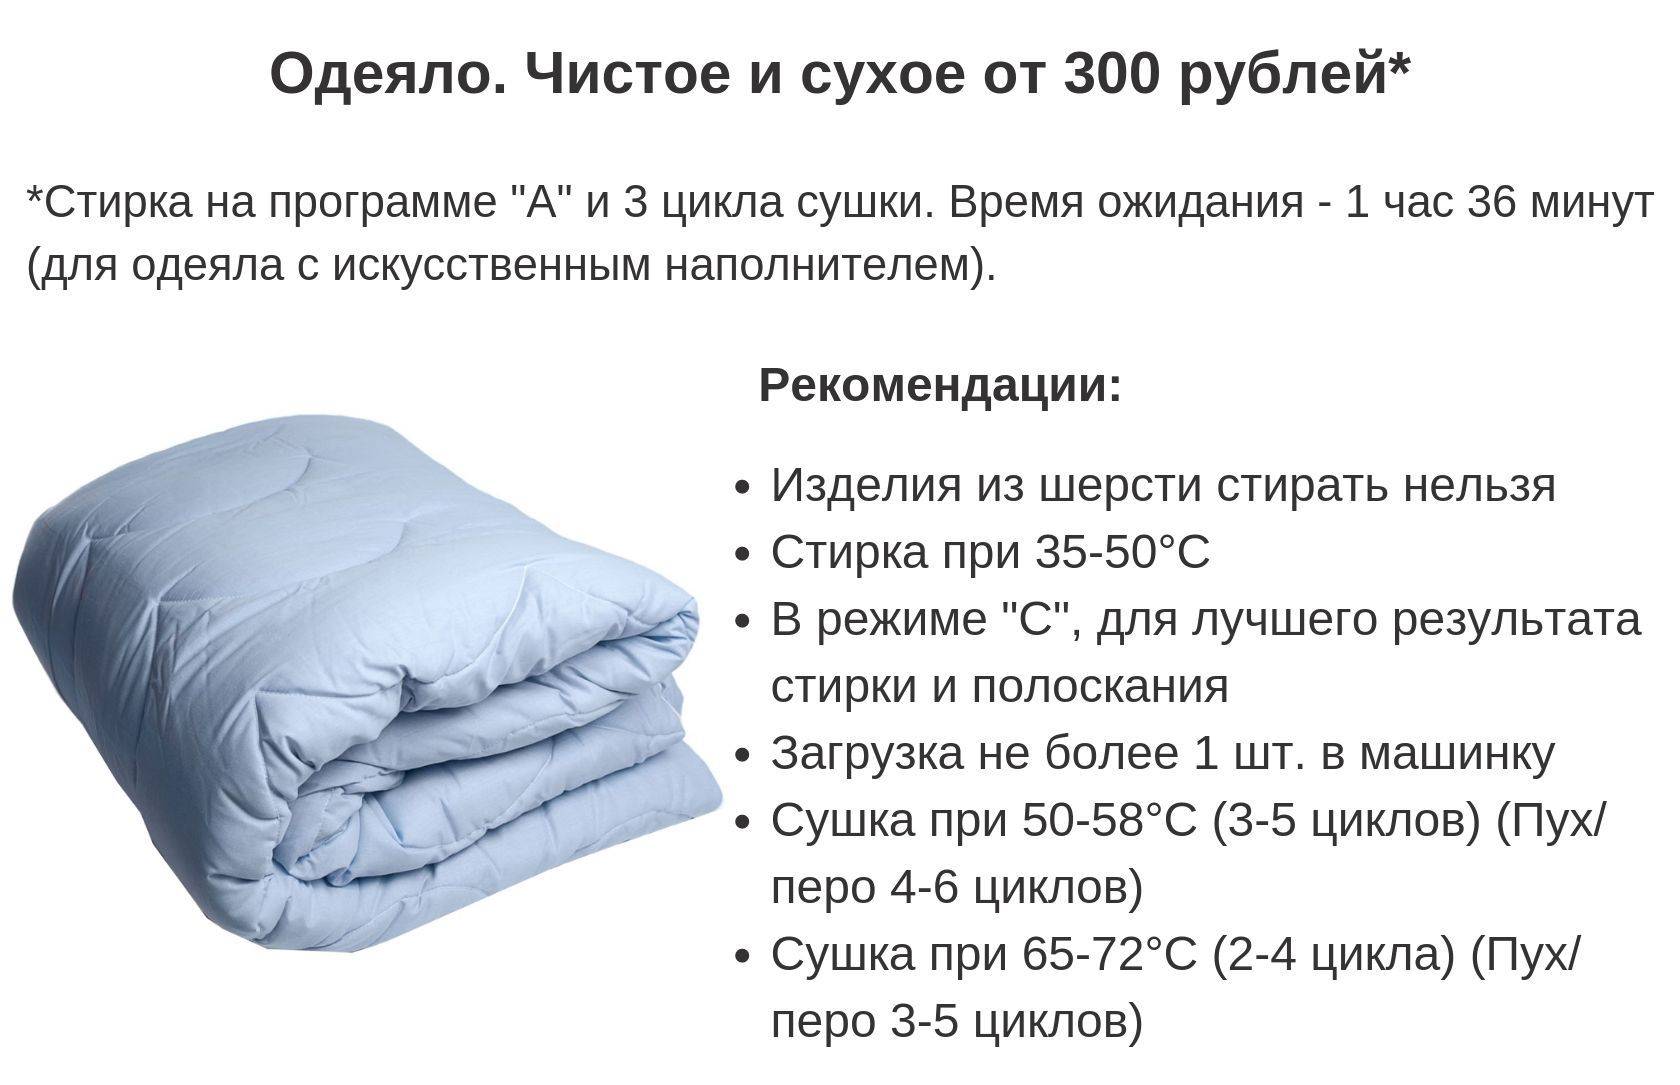 Пуховое одеяло: виды пуха, что лучше, как выбрать